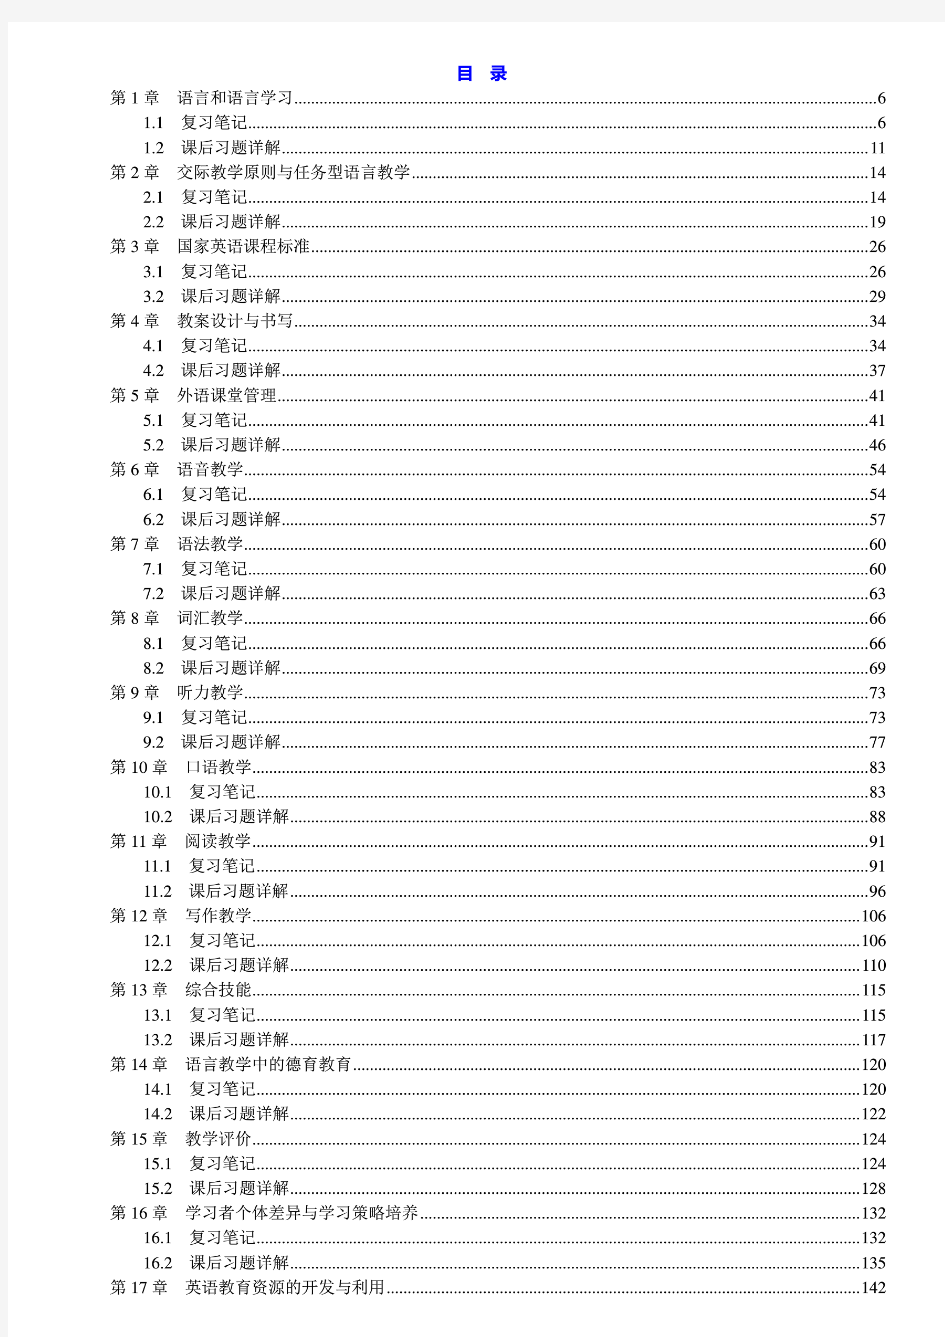 王蔷 英语教学法教程 第2版二版 修订版 笔记和课后习题详解答案(上册)